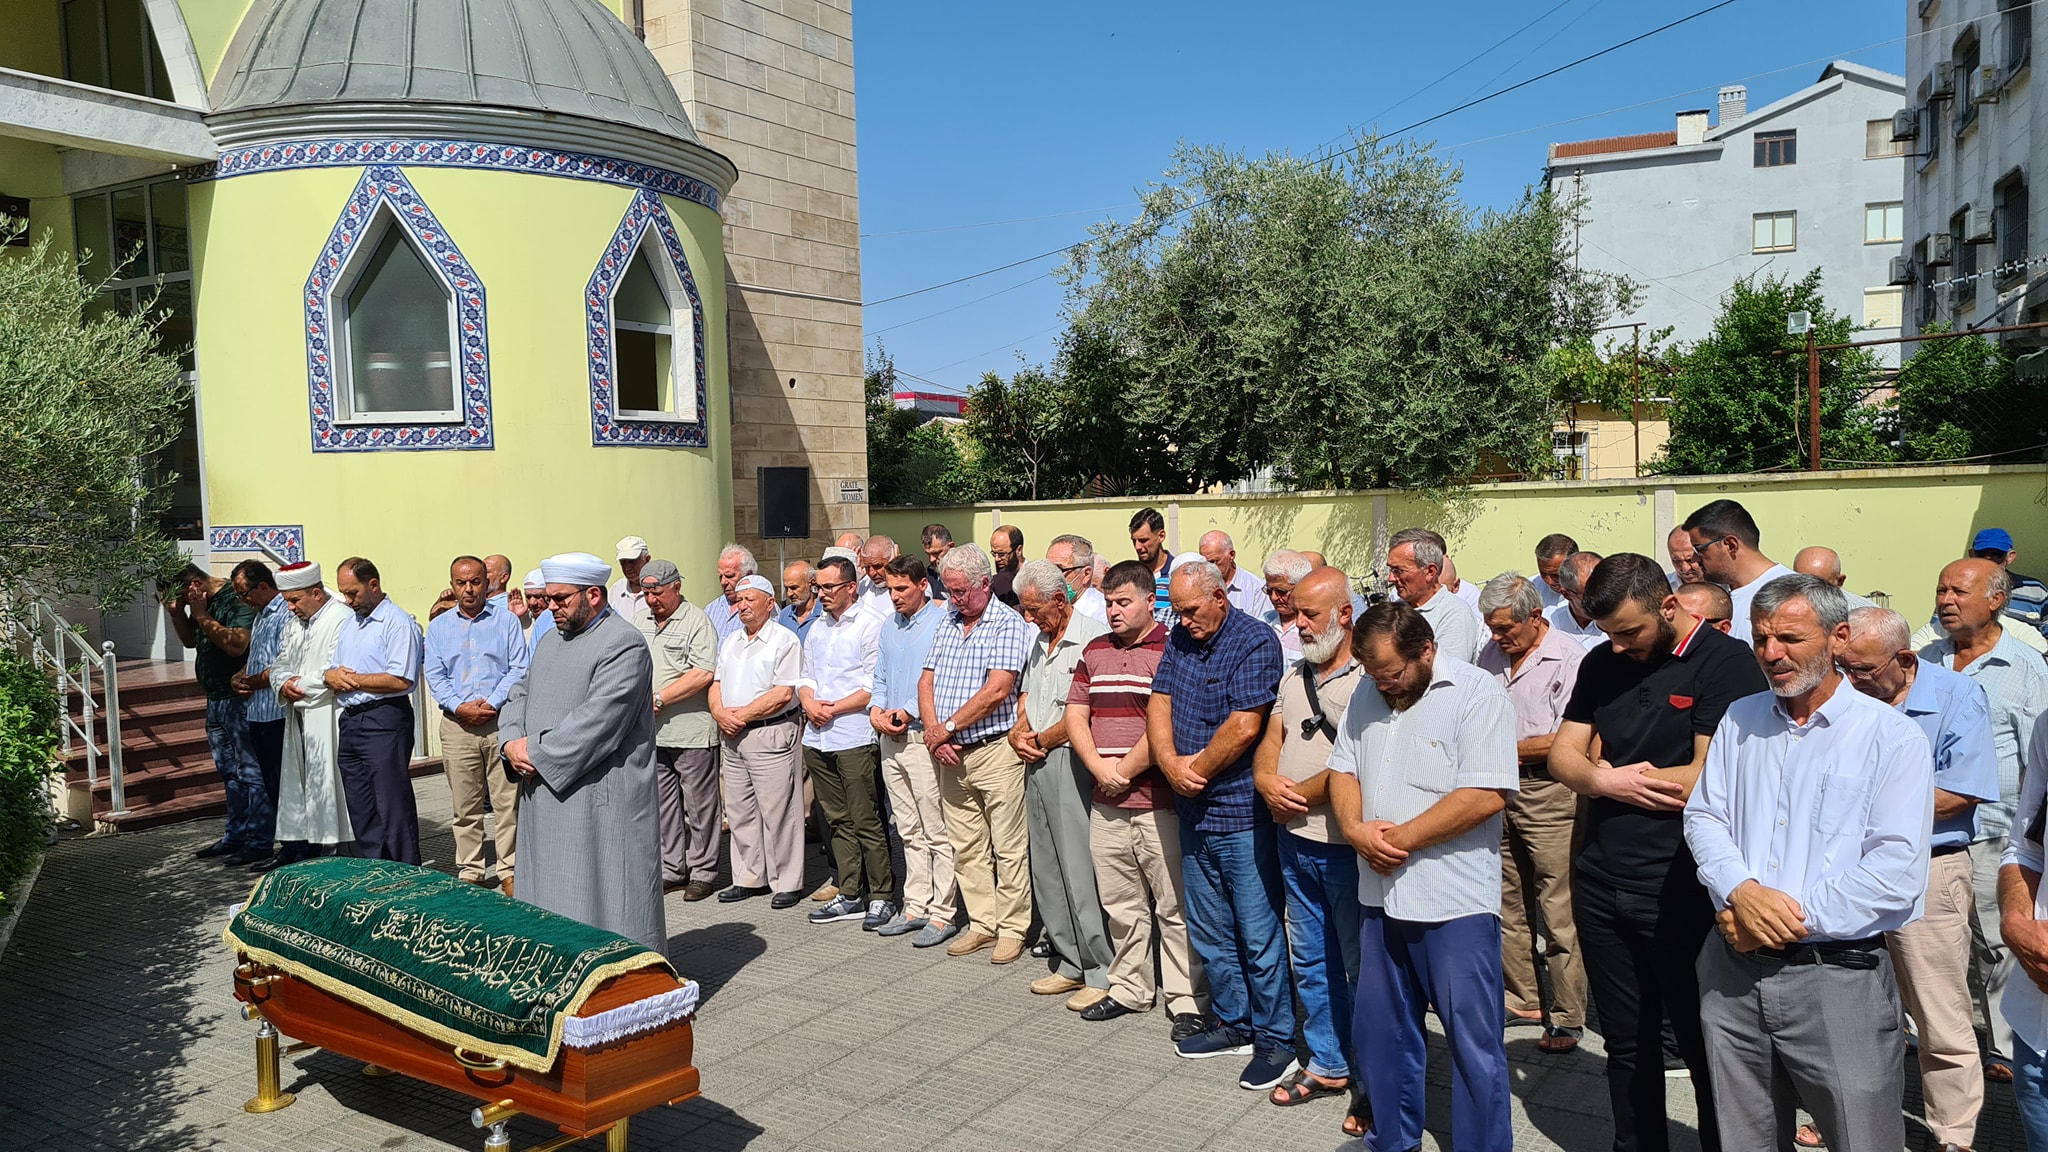 Përcillet me nderime për në banesën e fundit prof. Ahmet Osja